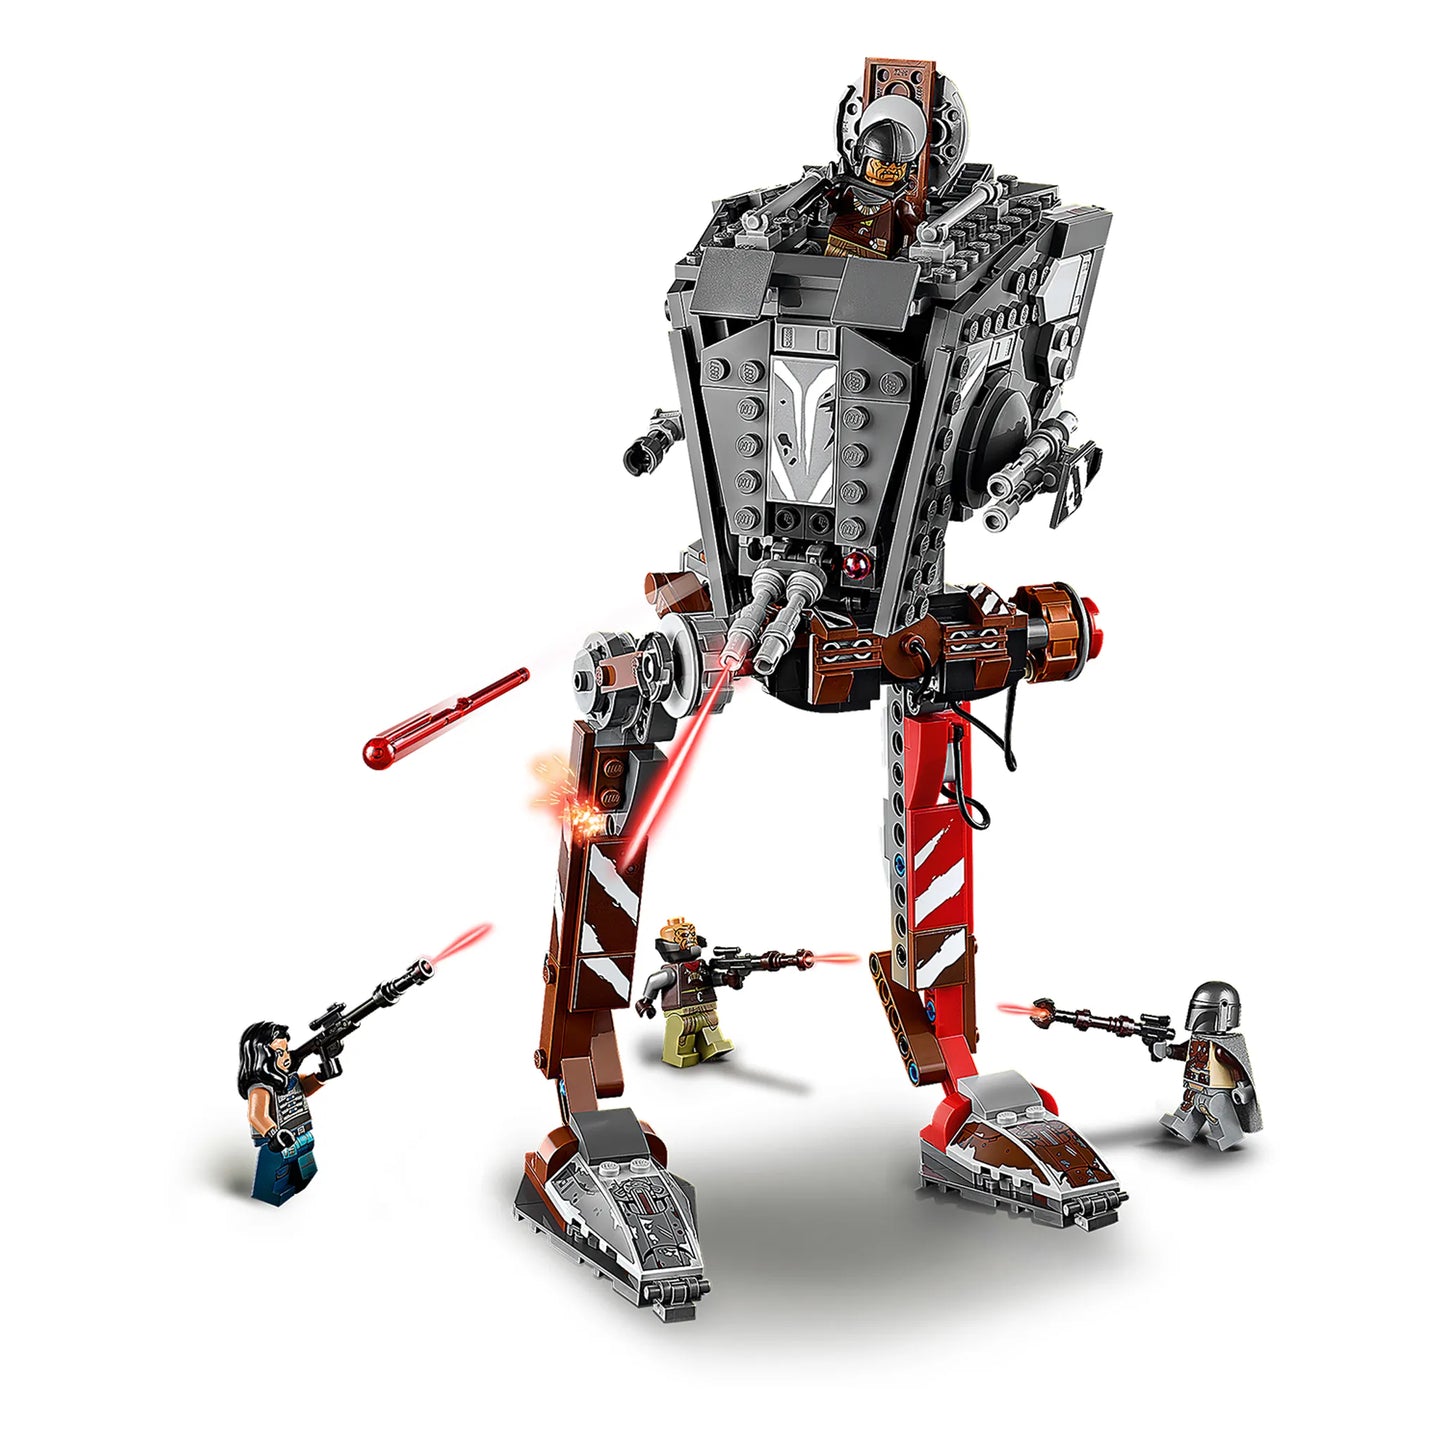 LEGO® EOL Star Wars 75254 AT-ST™-Räuber